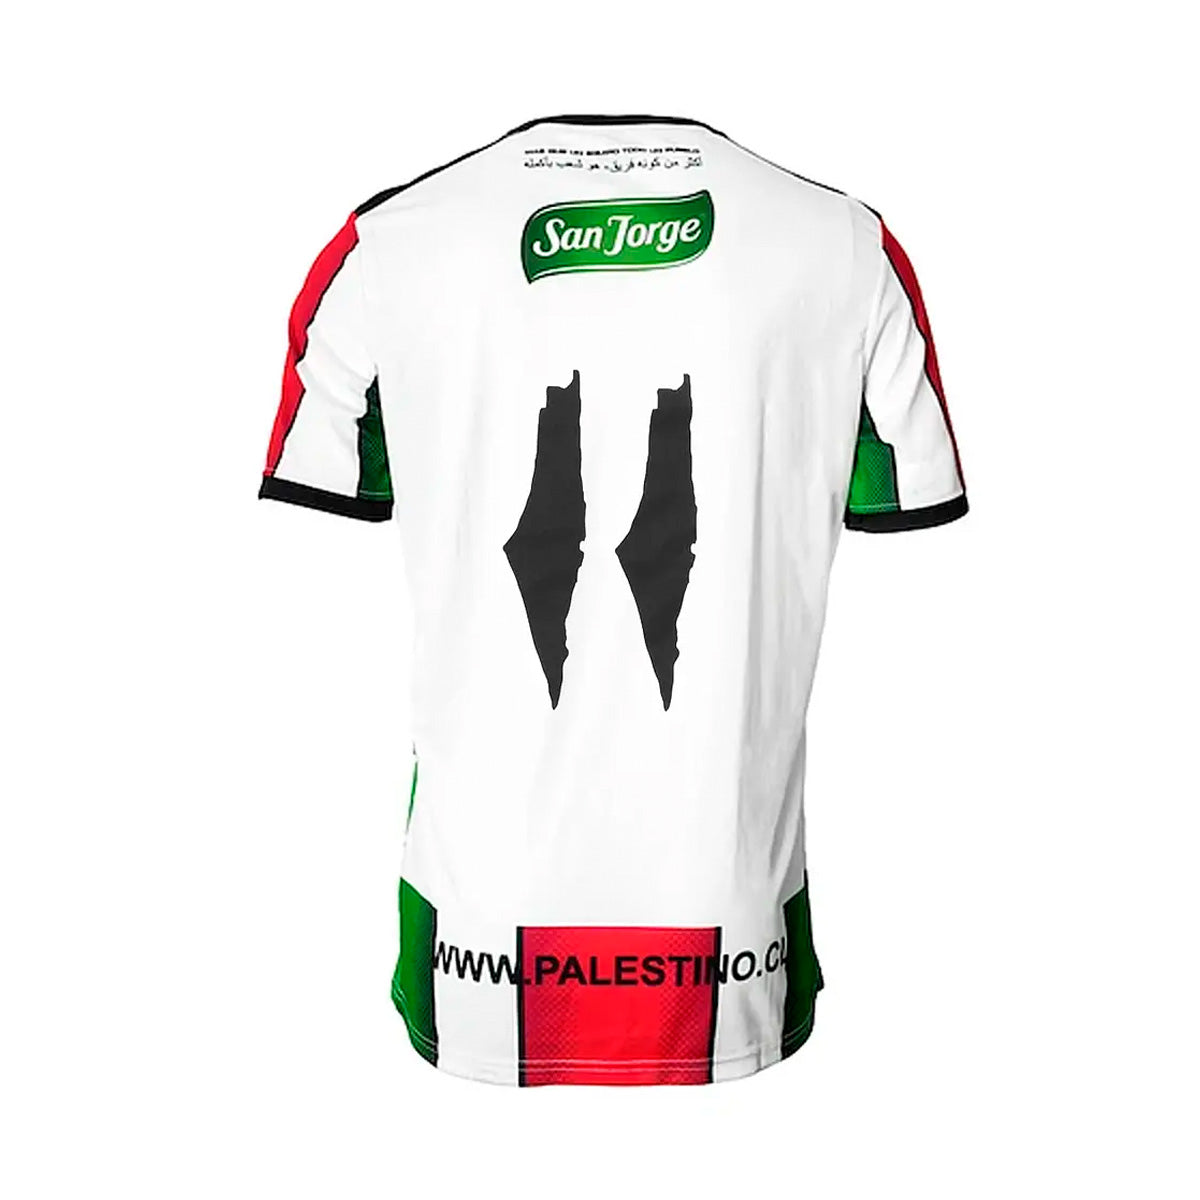 Palestino X Adidas